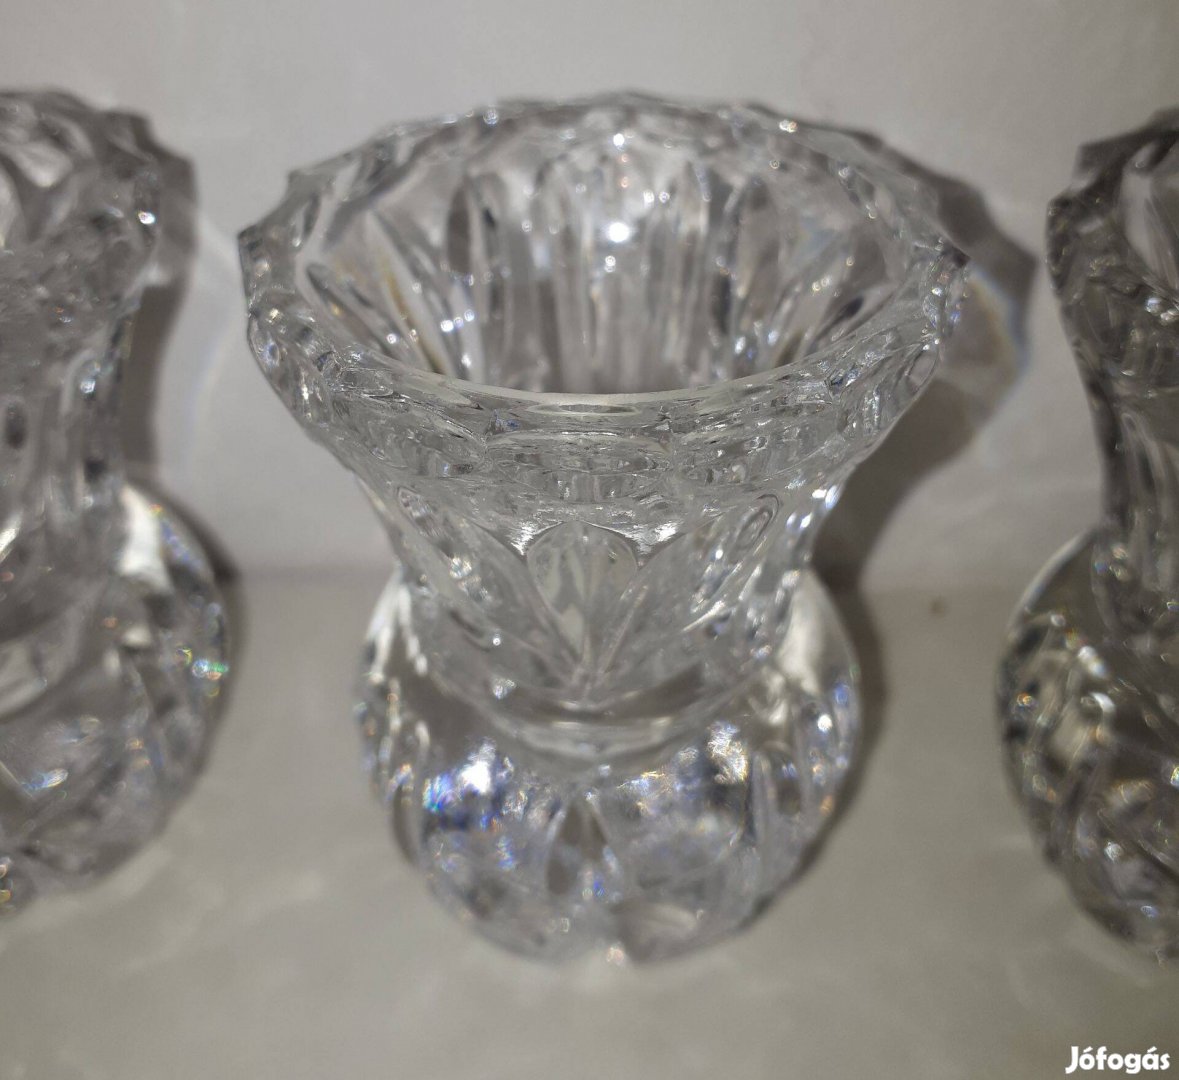 Kristály üveg ibolya váza 6 cm magas 800 ft darabonként